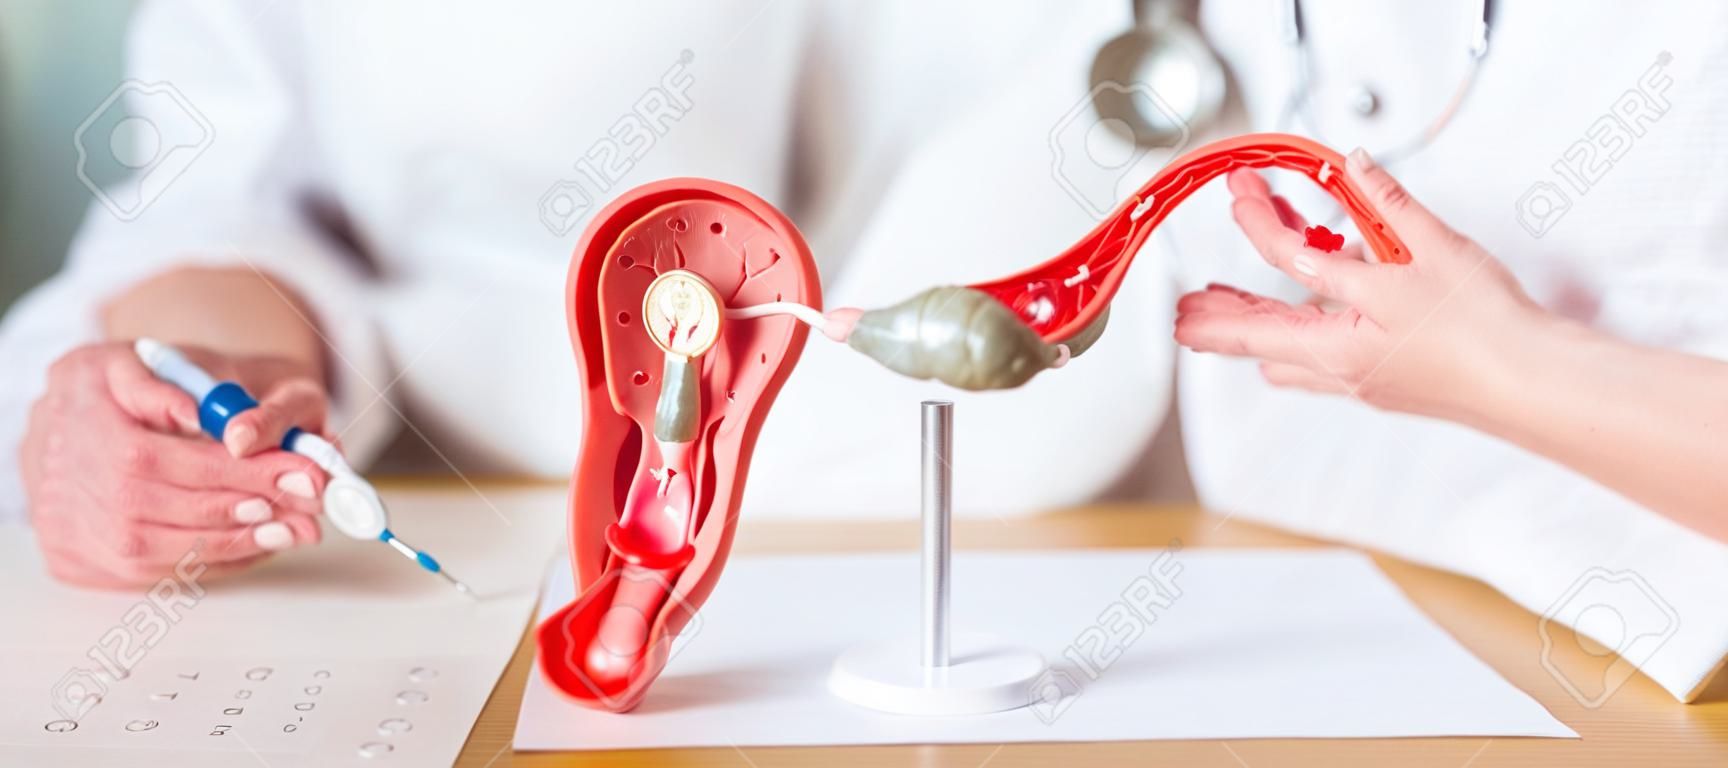 Médico con útero y ovarios modelo de anatomía cáncer de ovario y cuello uterino trastorno del cuello uterino endometriosis histerectomía fibromas uterinos sistema reproductivo embarazo y concepto de salud